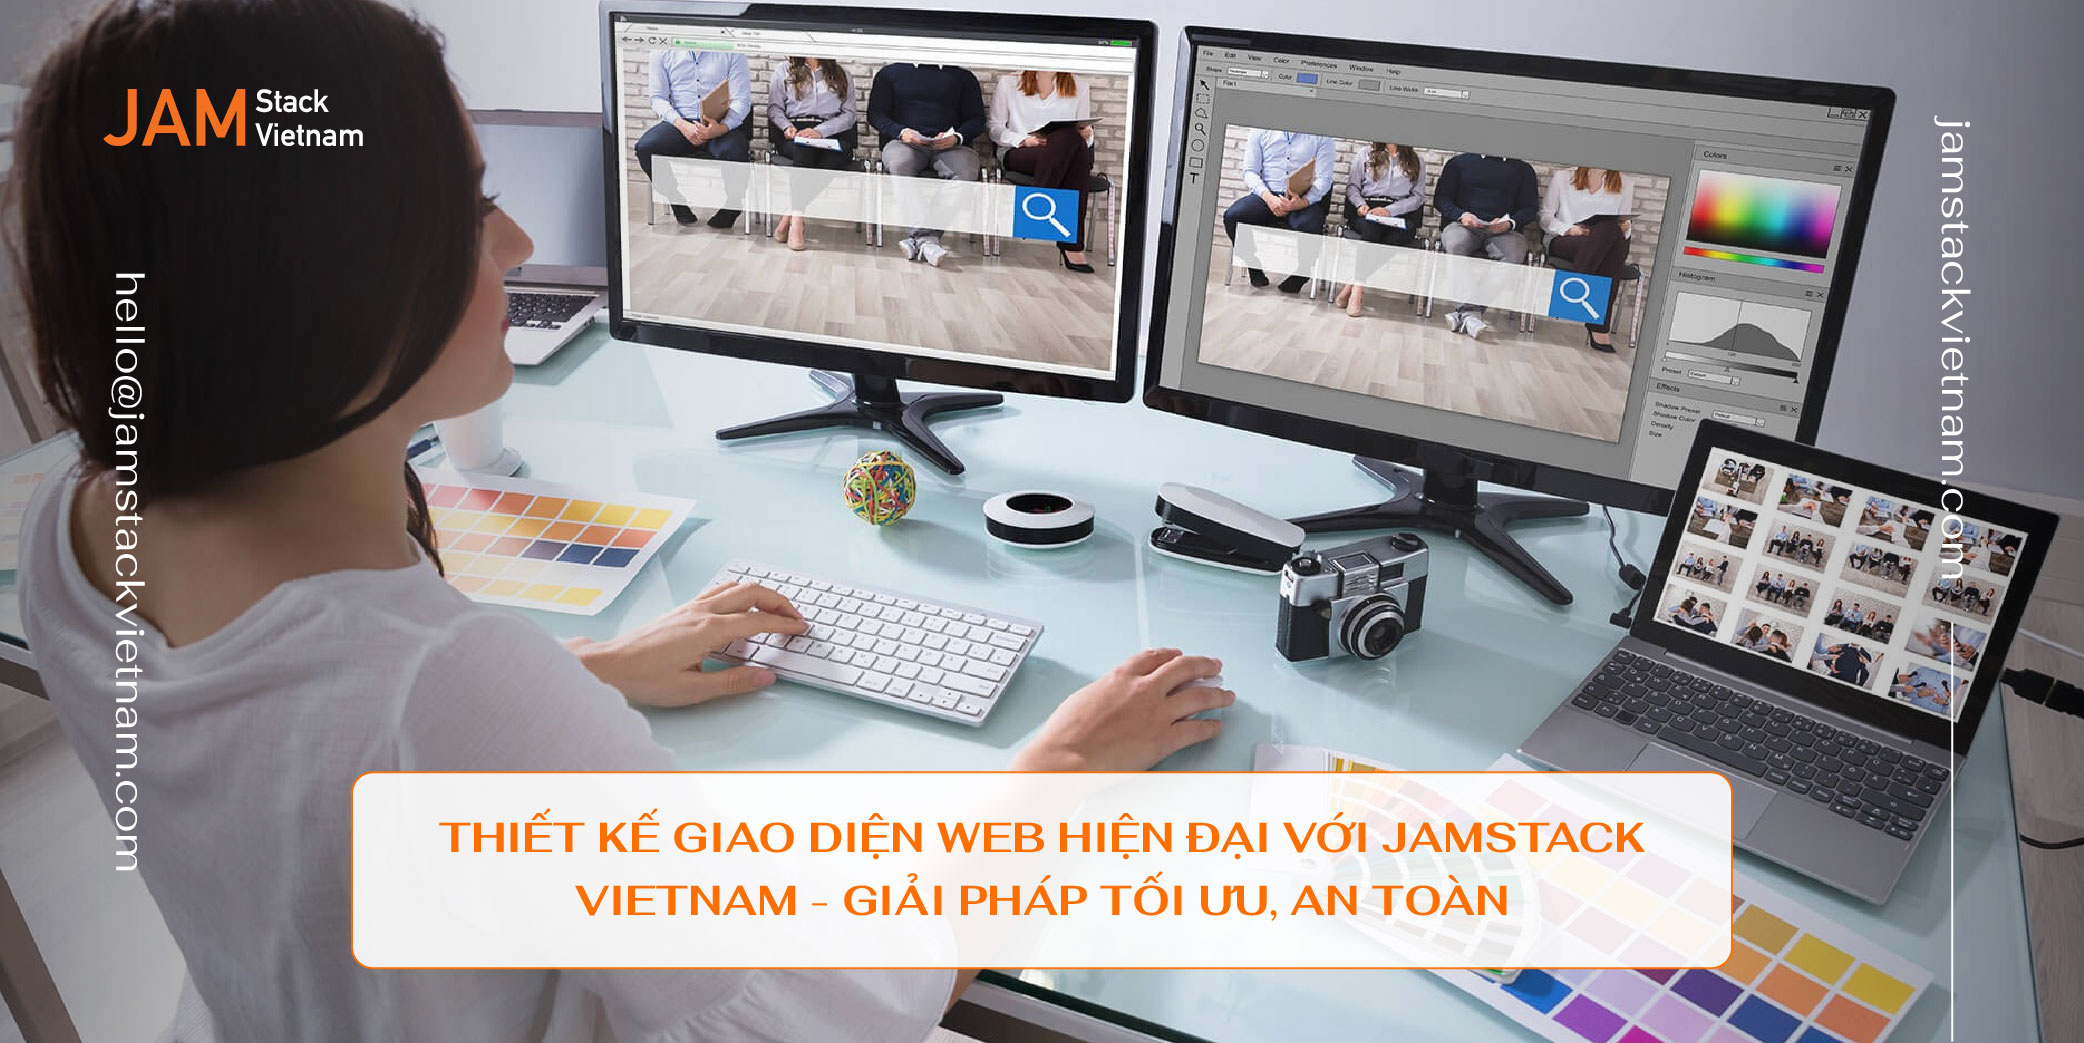 Thiết kế giao diện web hiện đại với JAMstack Vietnam - Giải pháp tối ưu, an toàn